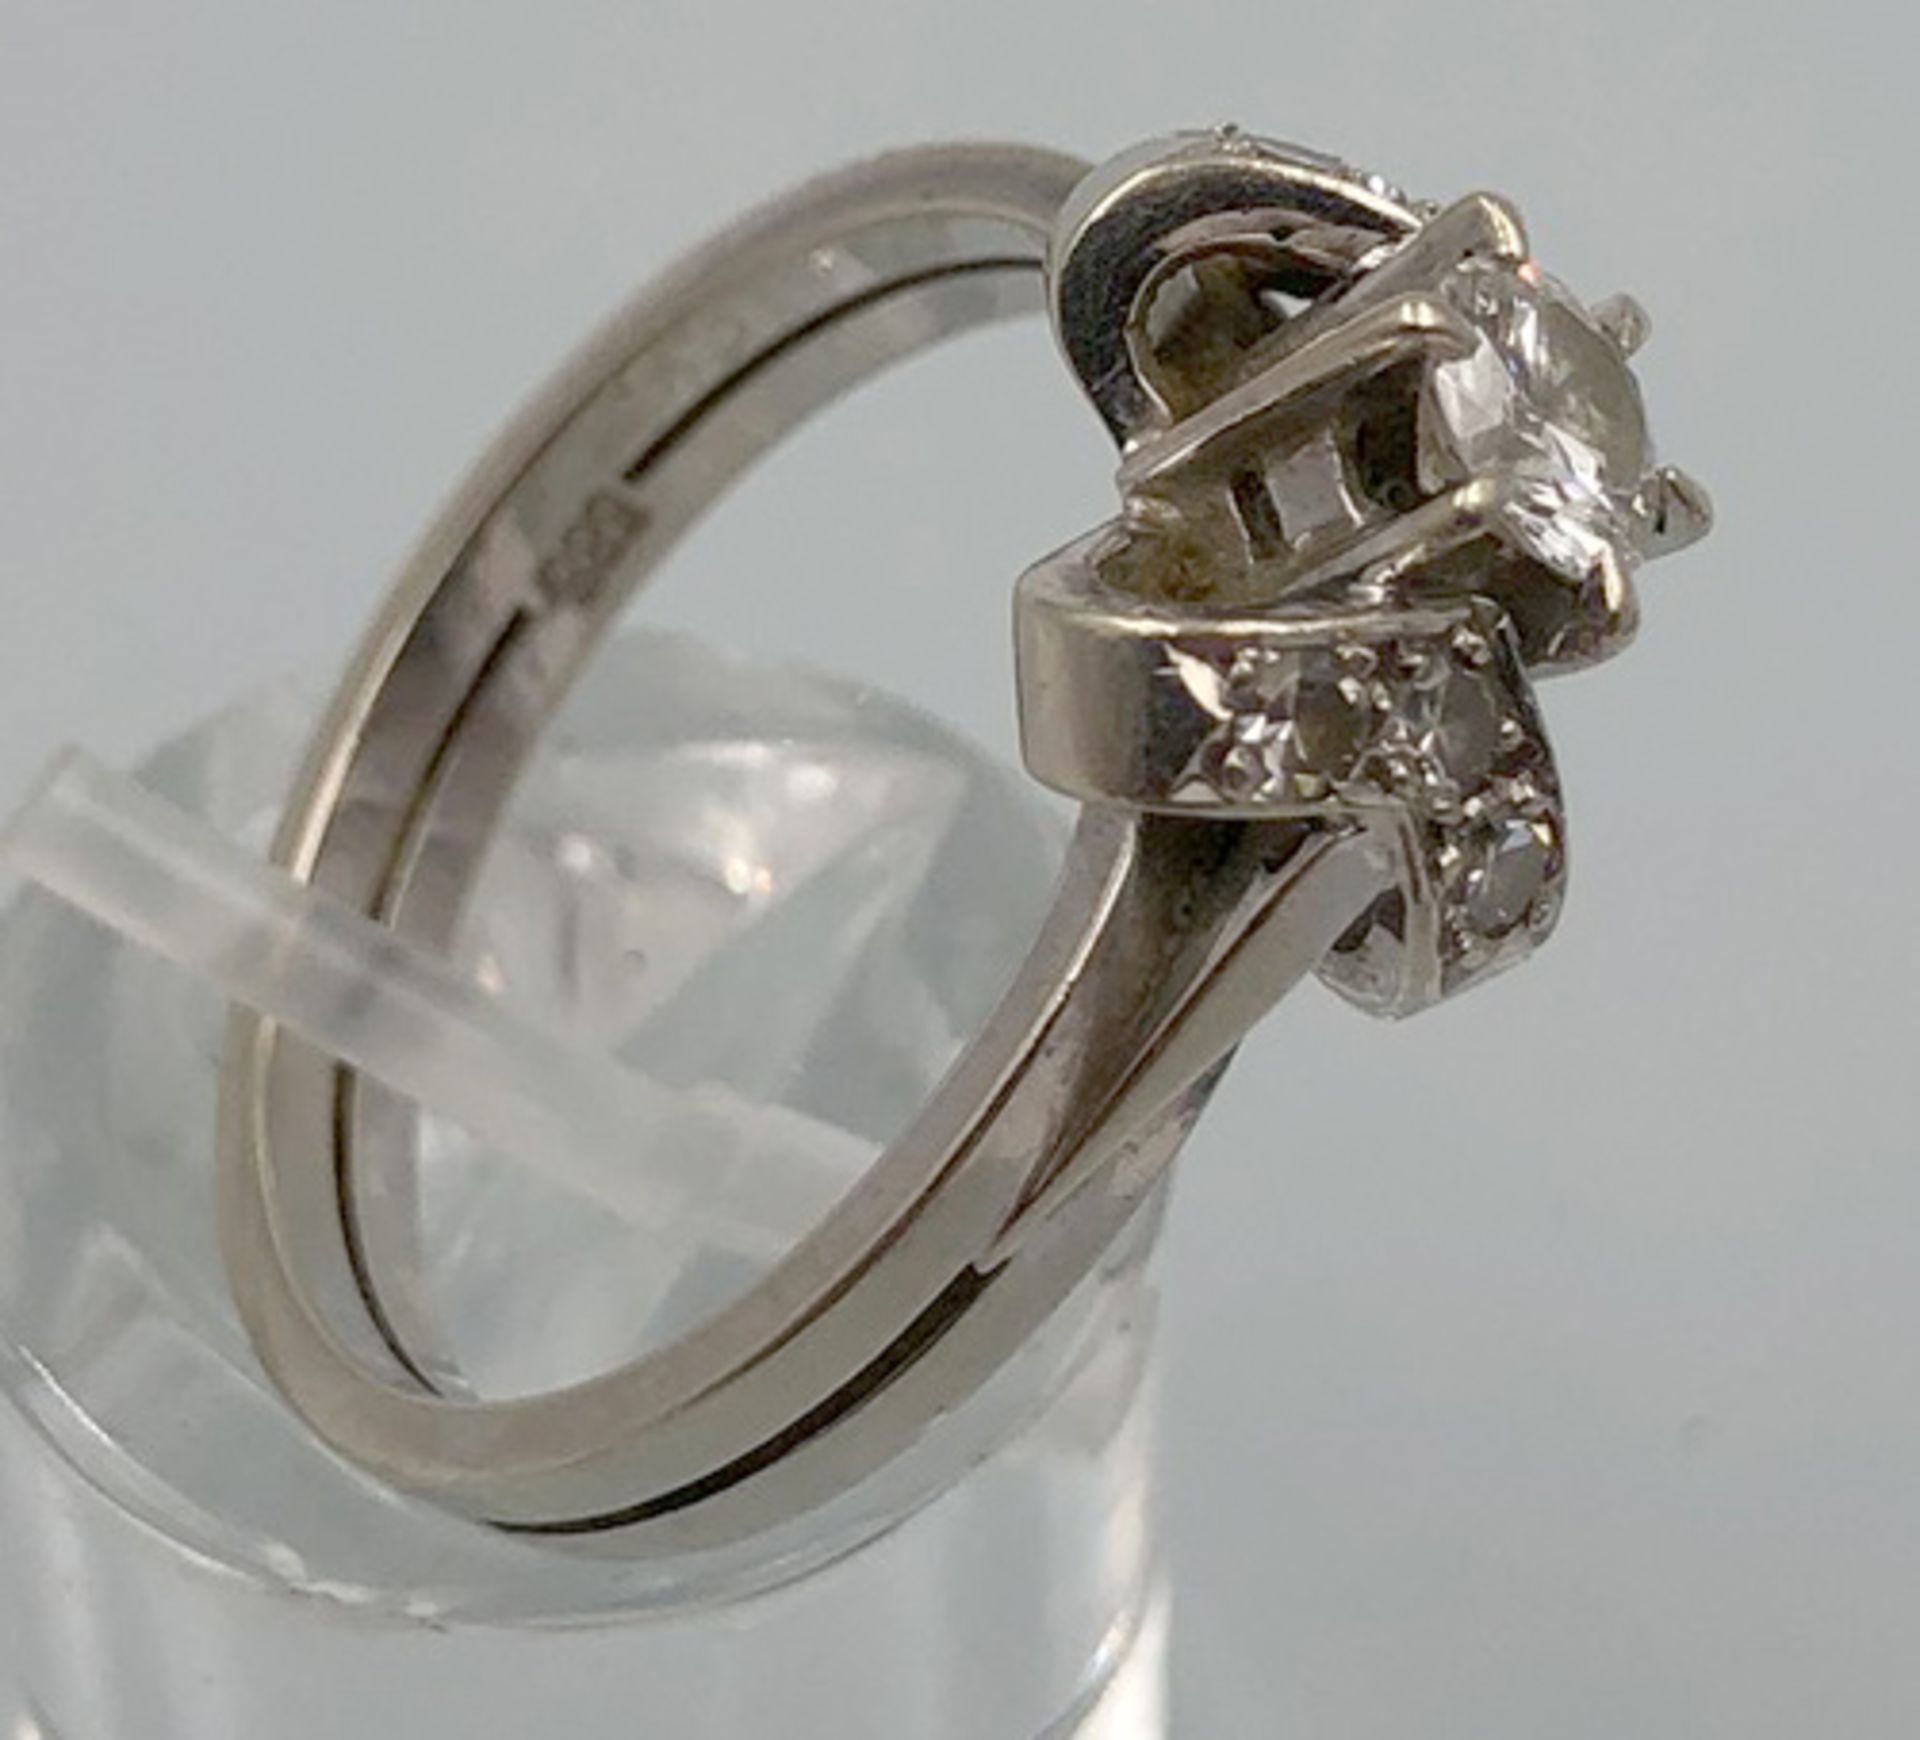 Weiß Gold 585. Ring mit Brillanten.4,0 Gramm Gesamtgewicht. Der mittige Diamant 4,48 mm Durchmesser, - Bild 7 aus 13